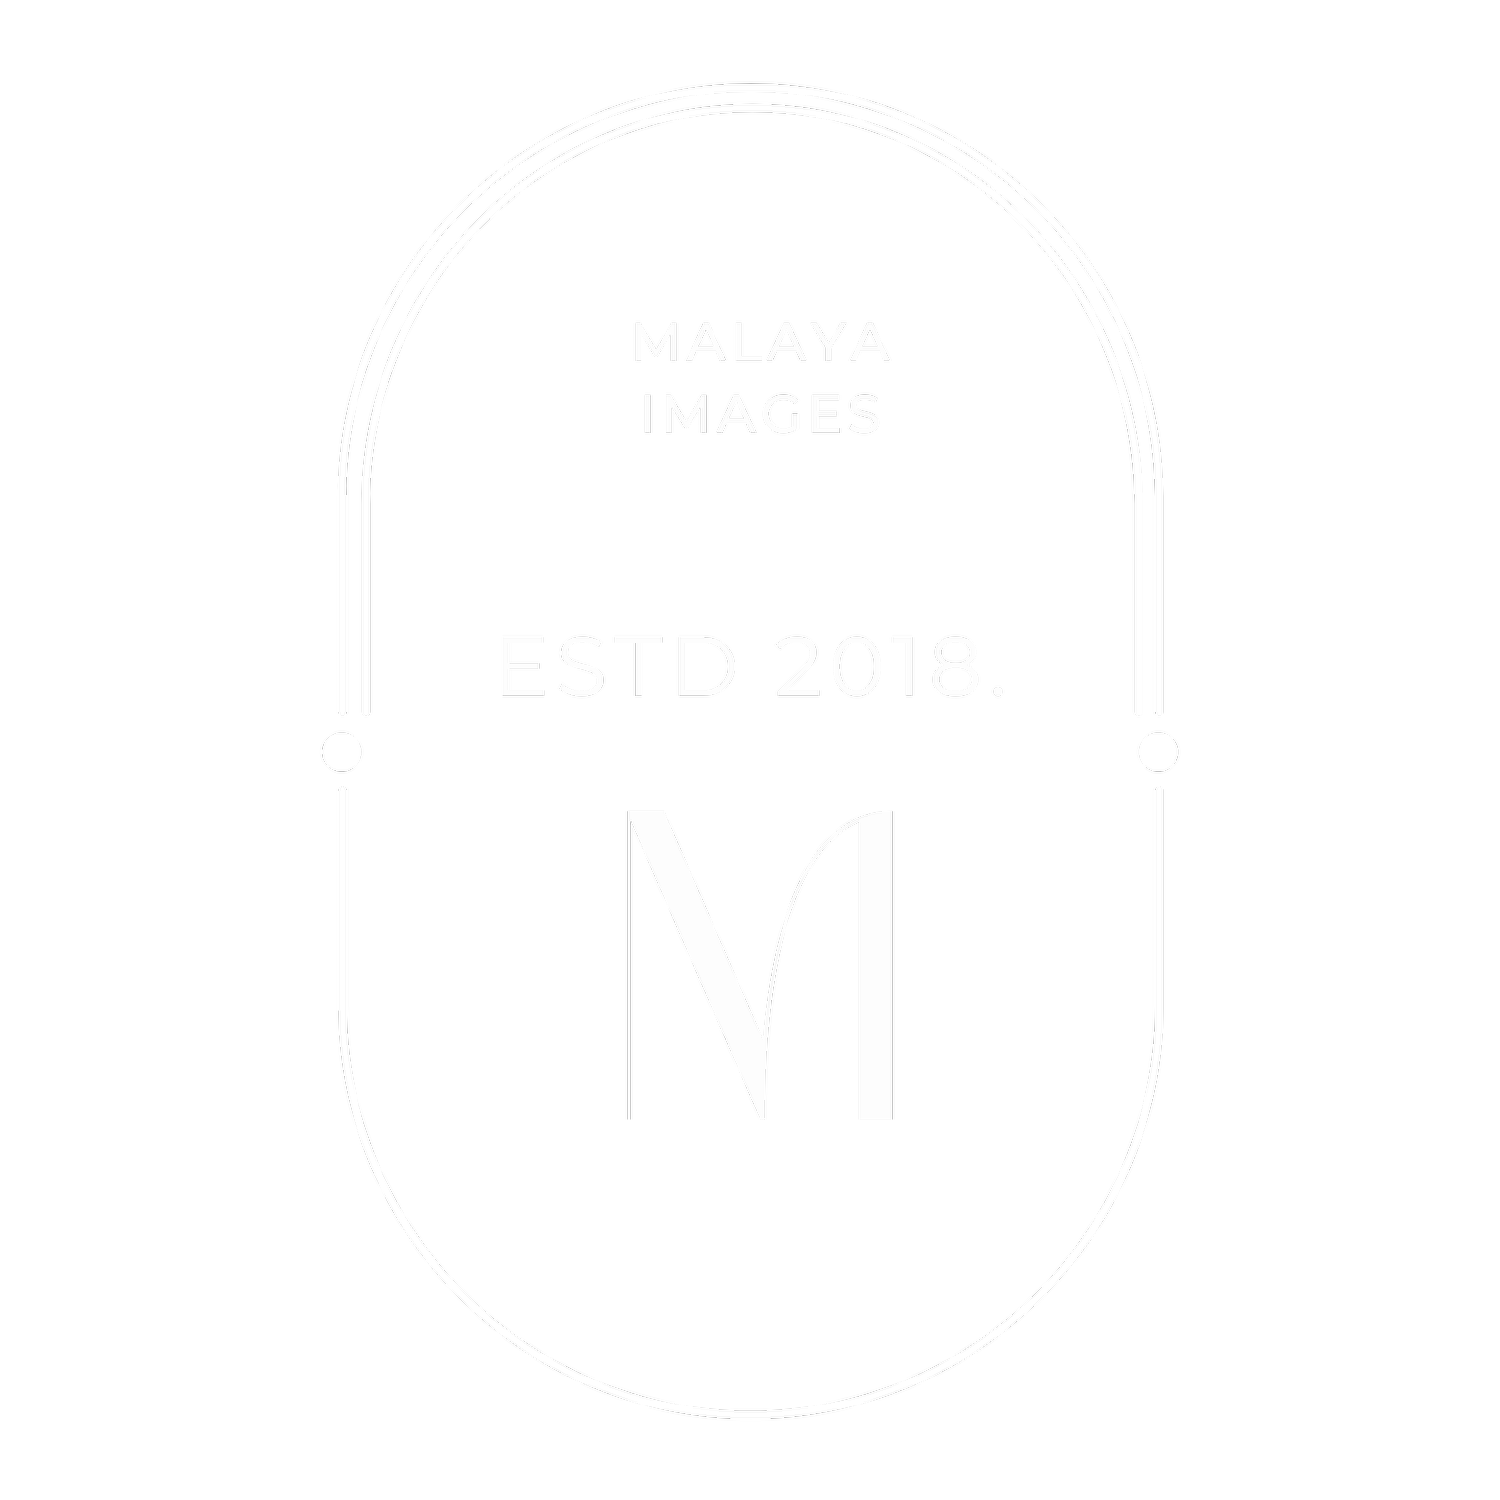 Malaya Images